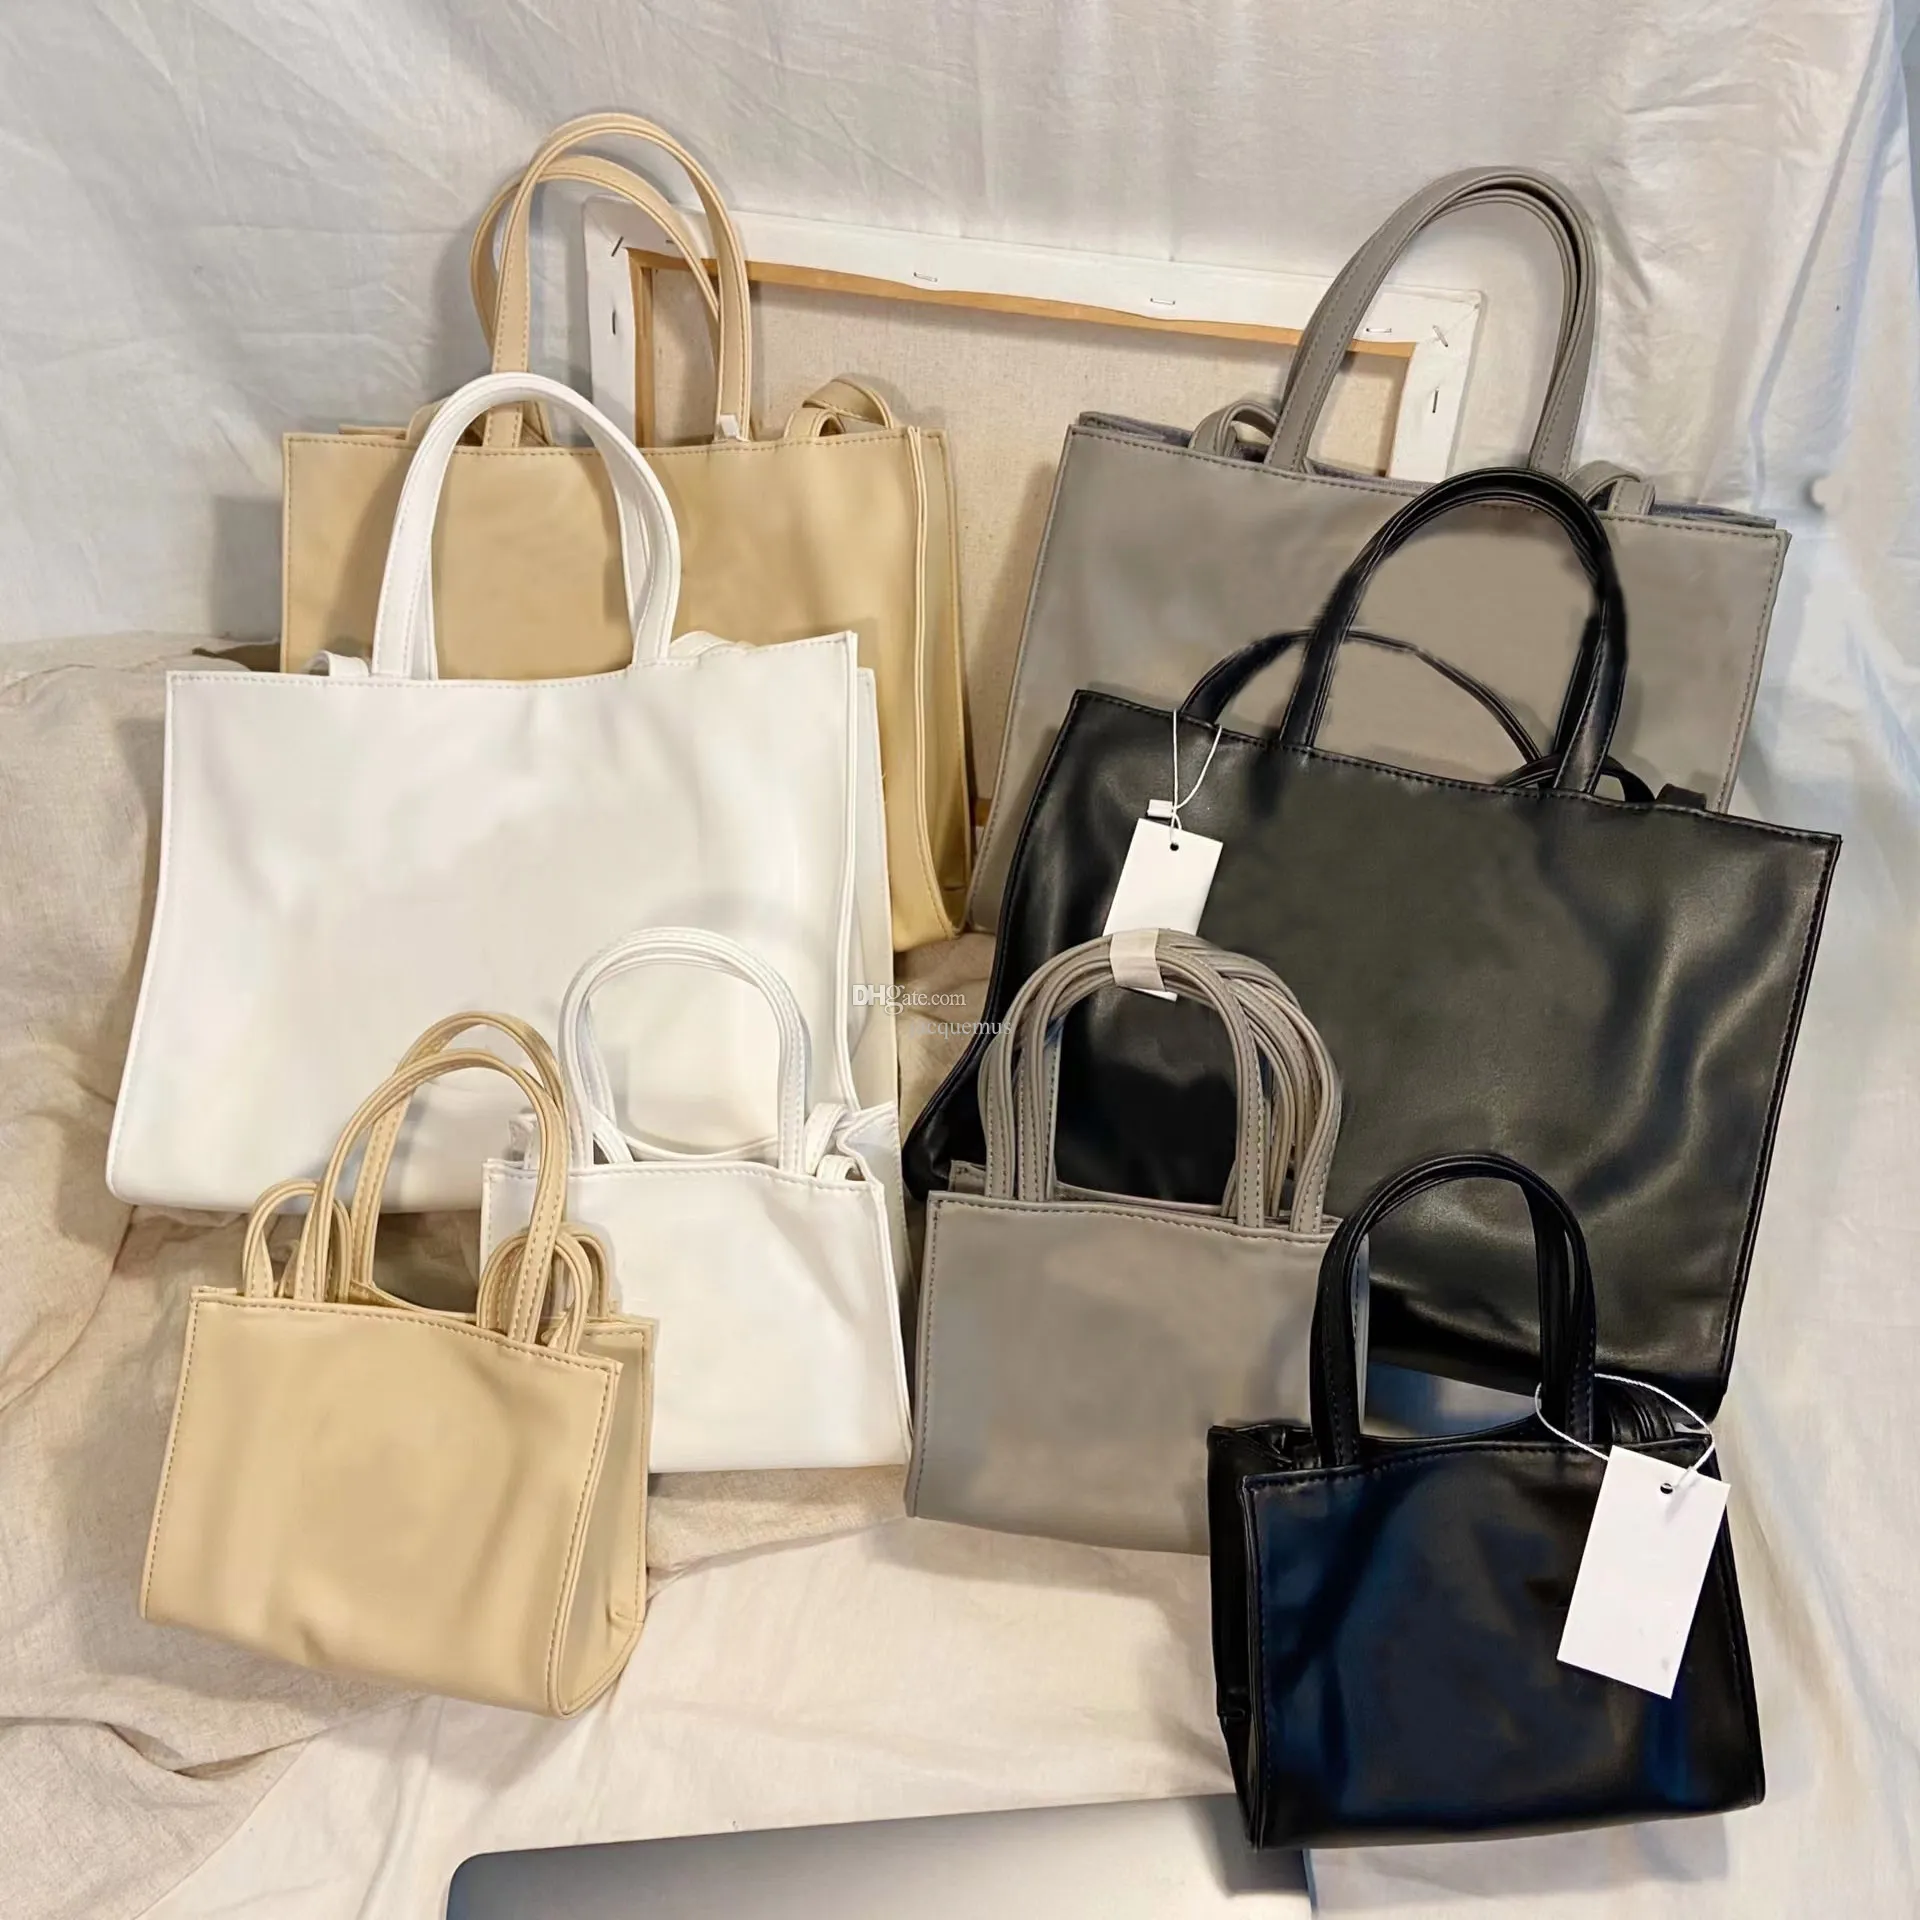 Najlepszy projektant 3 rozmiar Telfars torebki na ramię mini torby kobiety torebka miękka skórzana crossbody luksusowe modne zakupy różowe białe torba torby